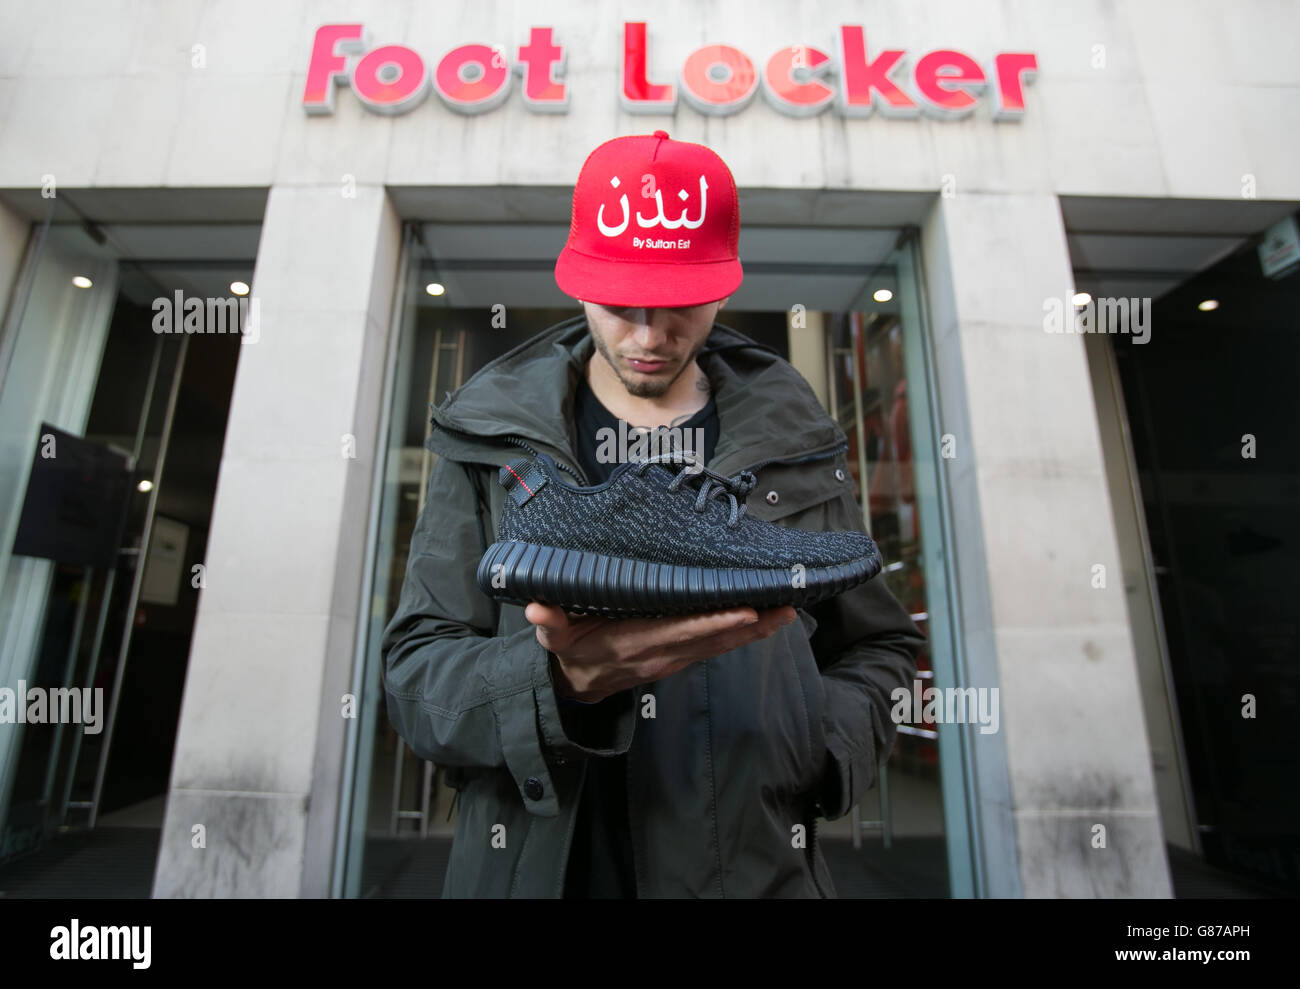 Sultan Est, 23 Outside Foot Locker en Oxford Street, Londres, con su nuevo par de entrenadores Adidas Yeezy Boost diseñados por el músico Kanye West Fotografía de stock Alamy